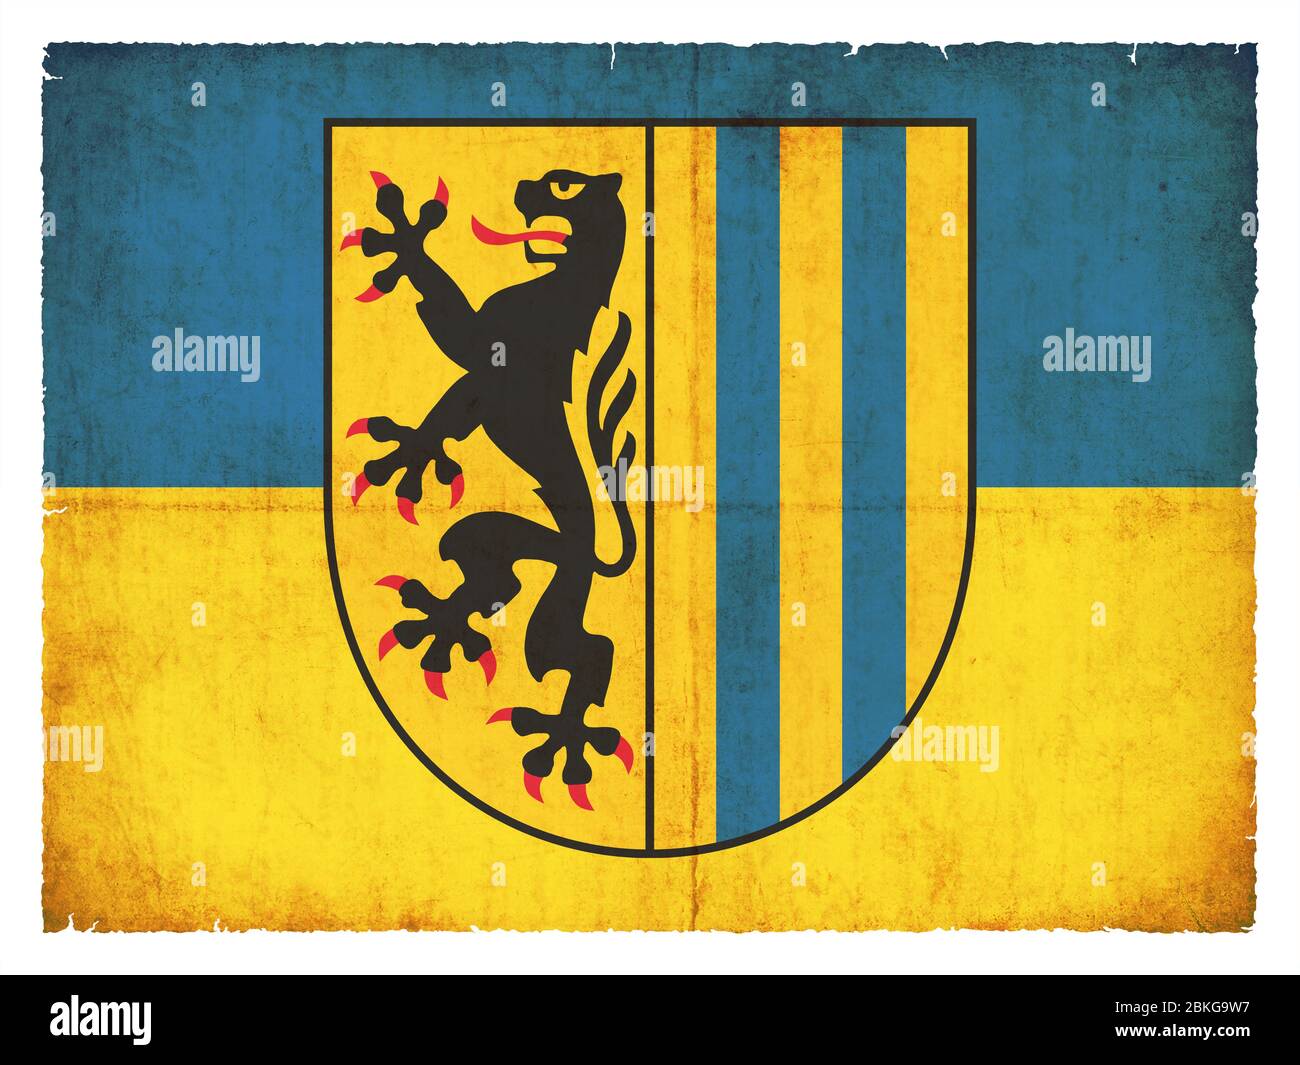 Bandera de la ciudad alemana Leipzig (Sajonia, Alemania) creada en estilo grunge Foto de stock